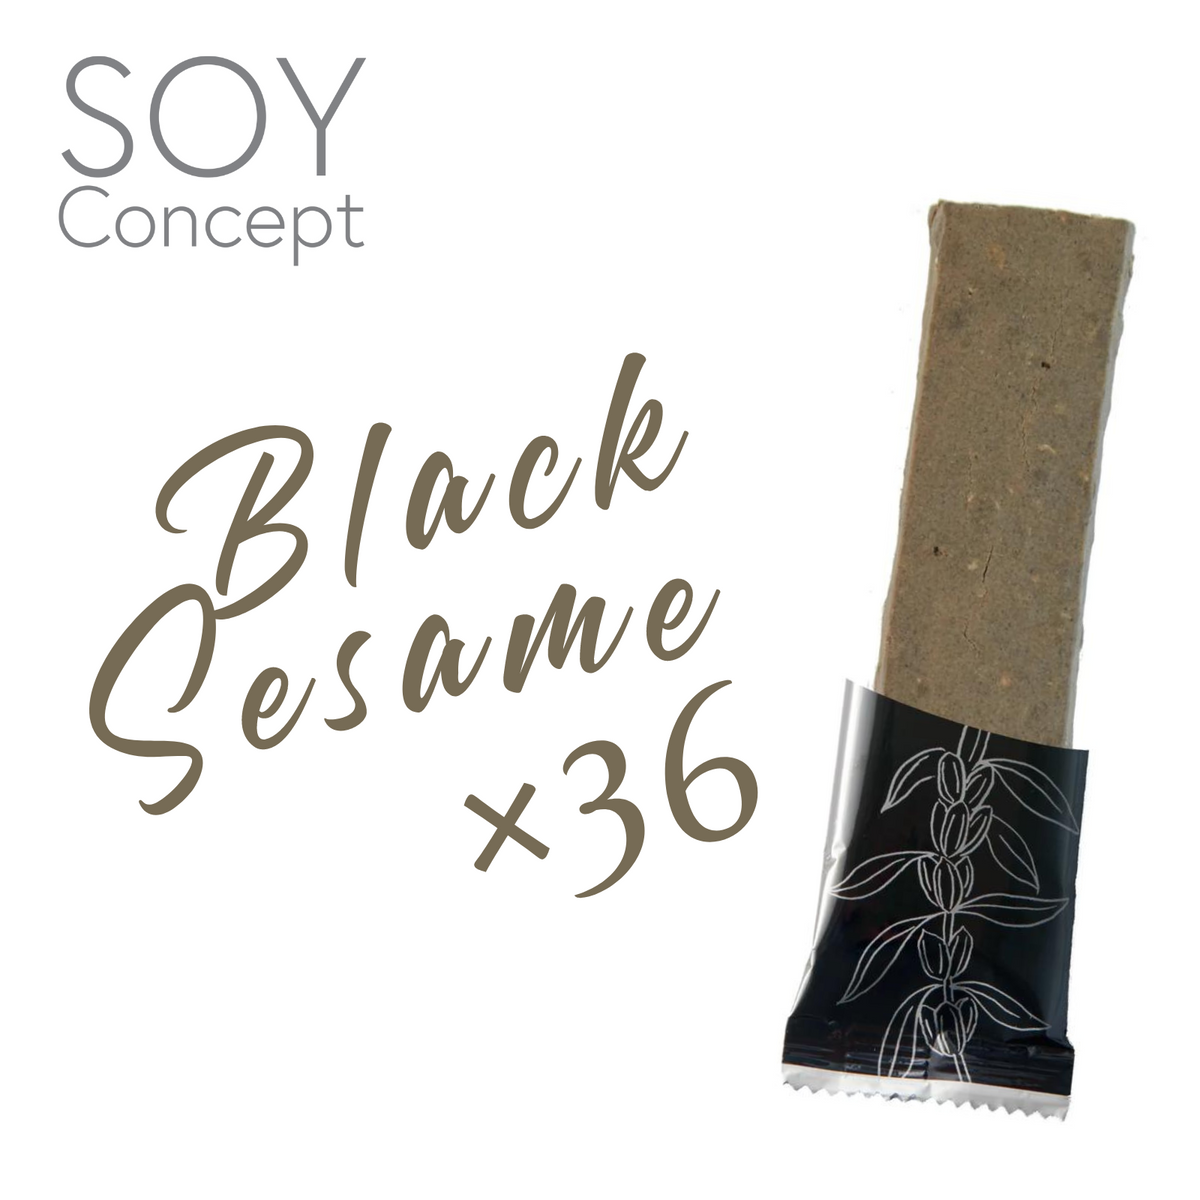 SOY Concept Black Sesame Black Sesame Value Set